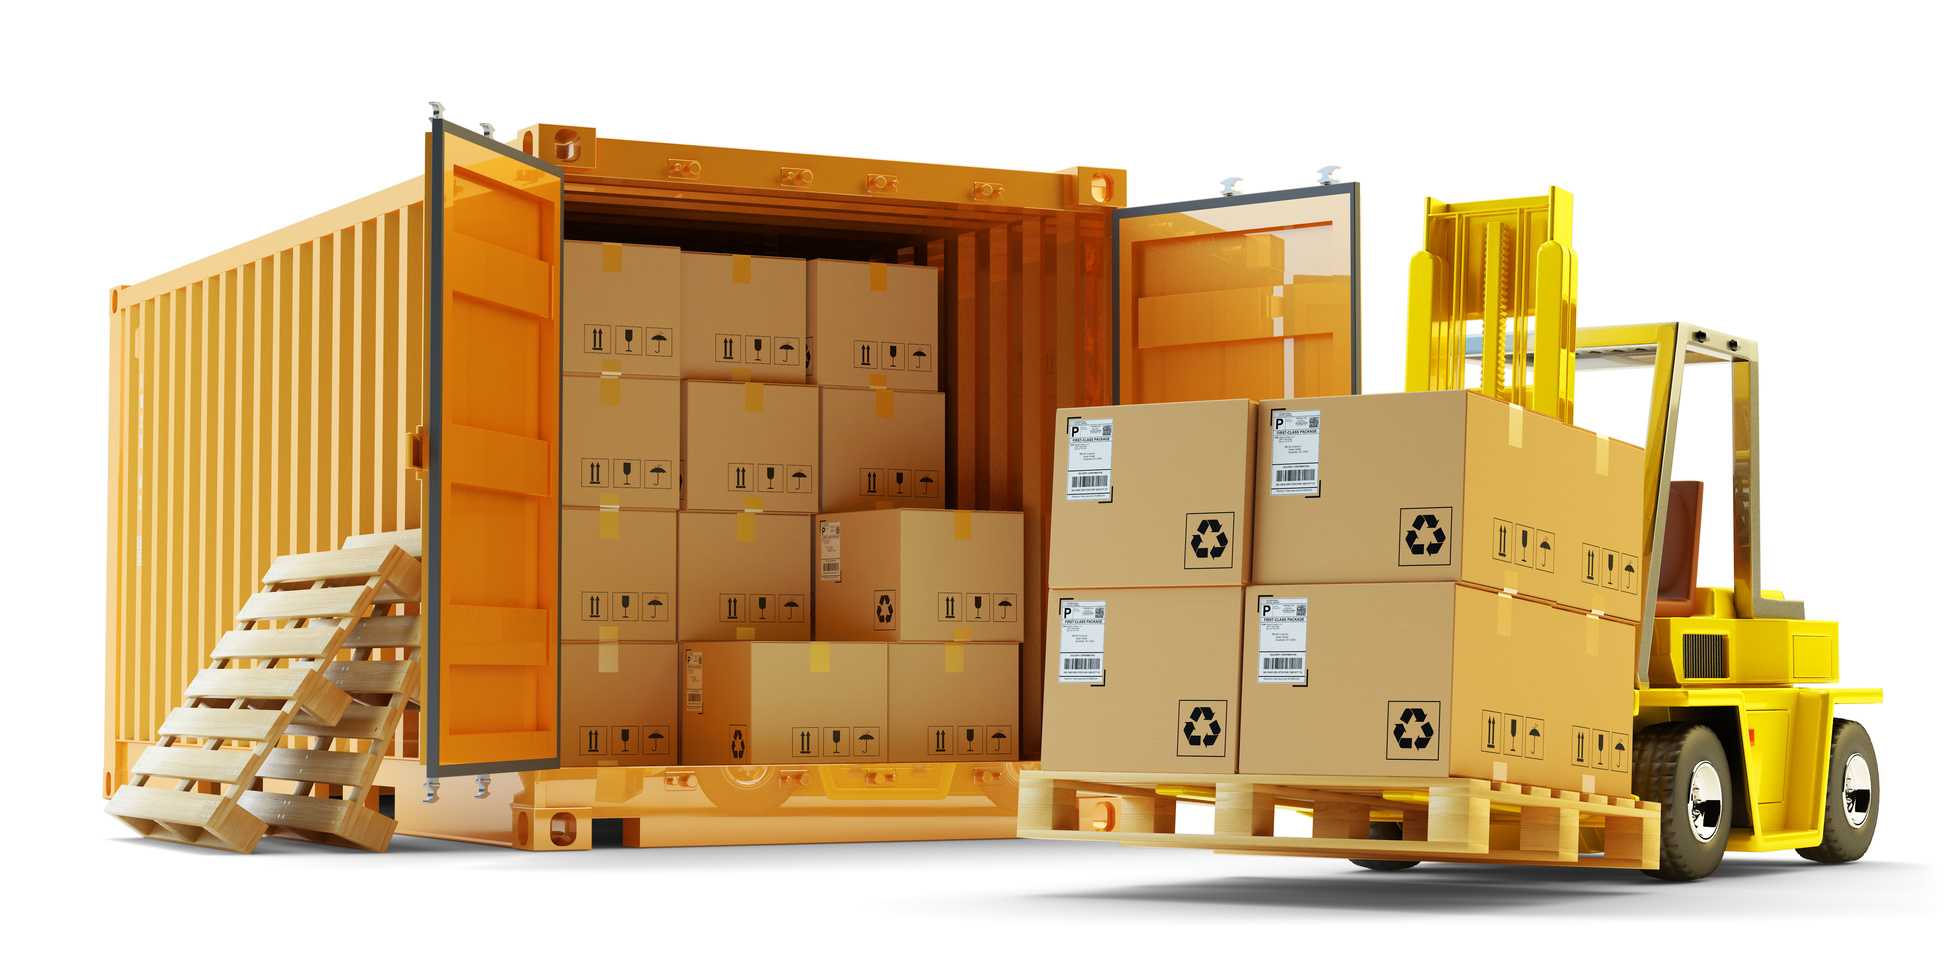 Доставка контейнера из Китая: надежная реализация многих возможностей!